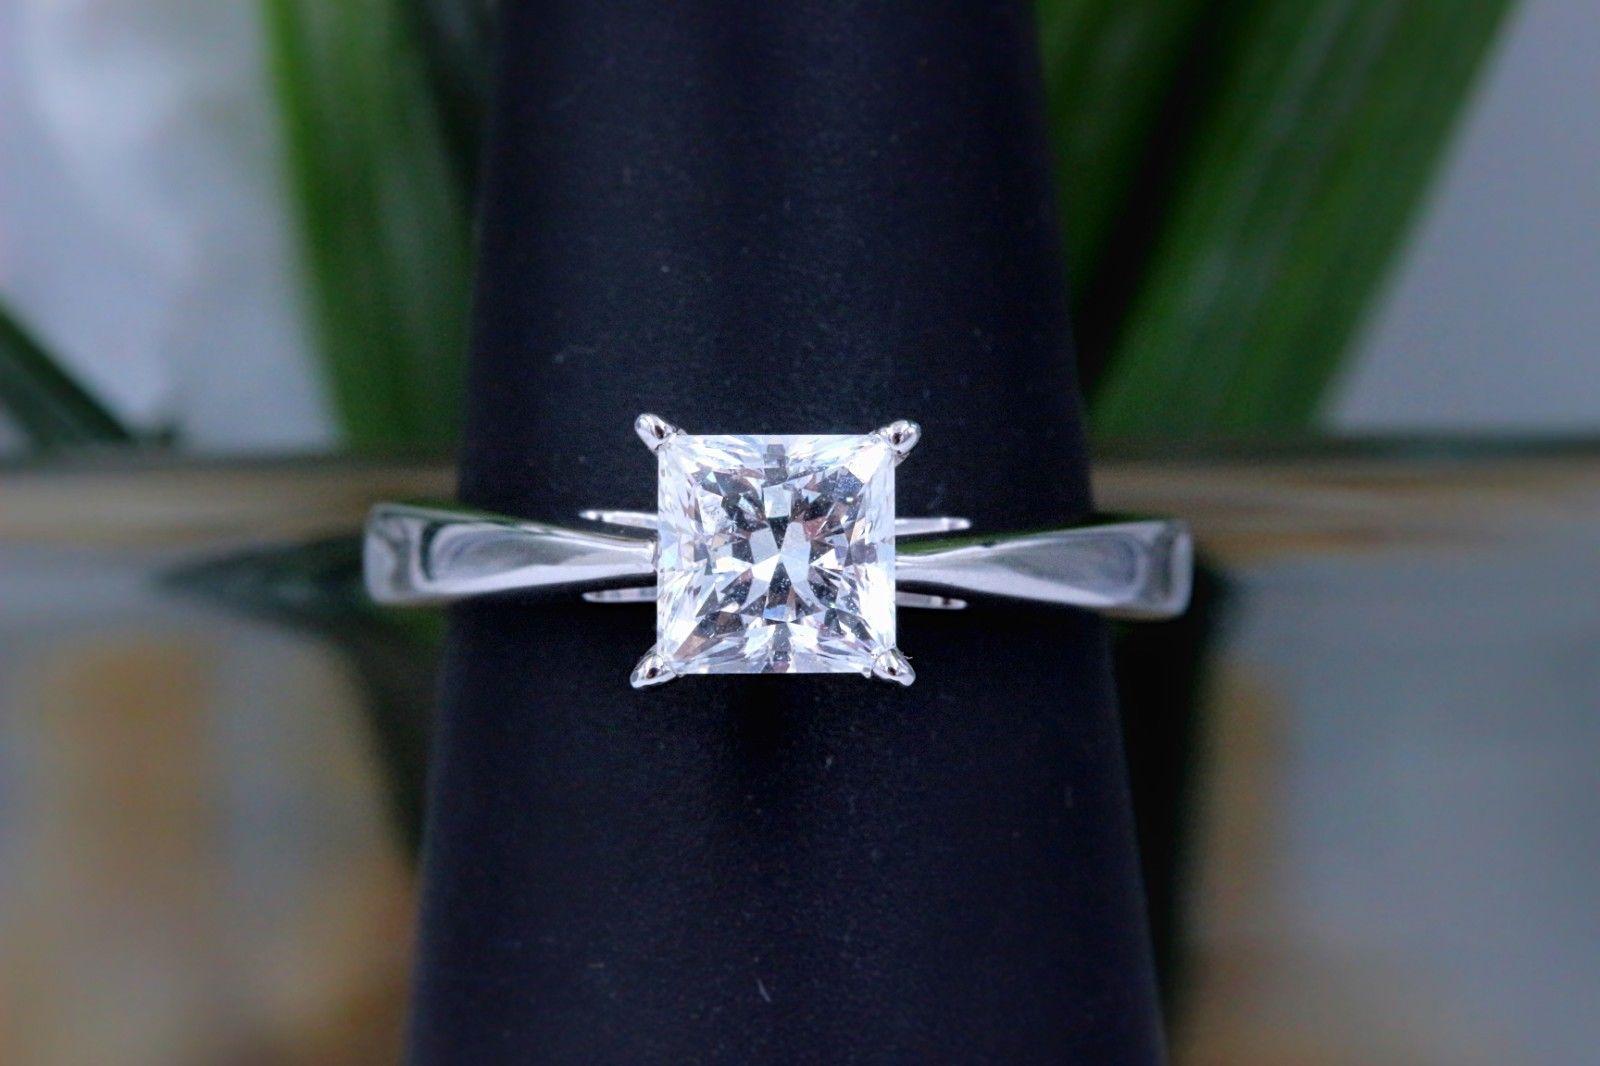 18 carat white gold 1 carat diamond engagement ring